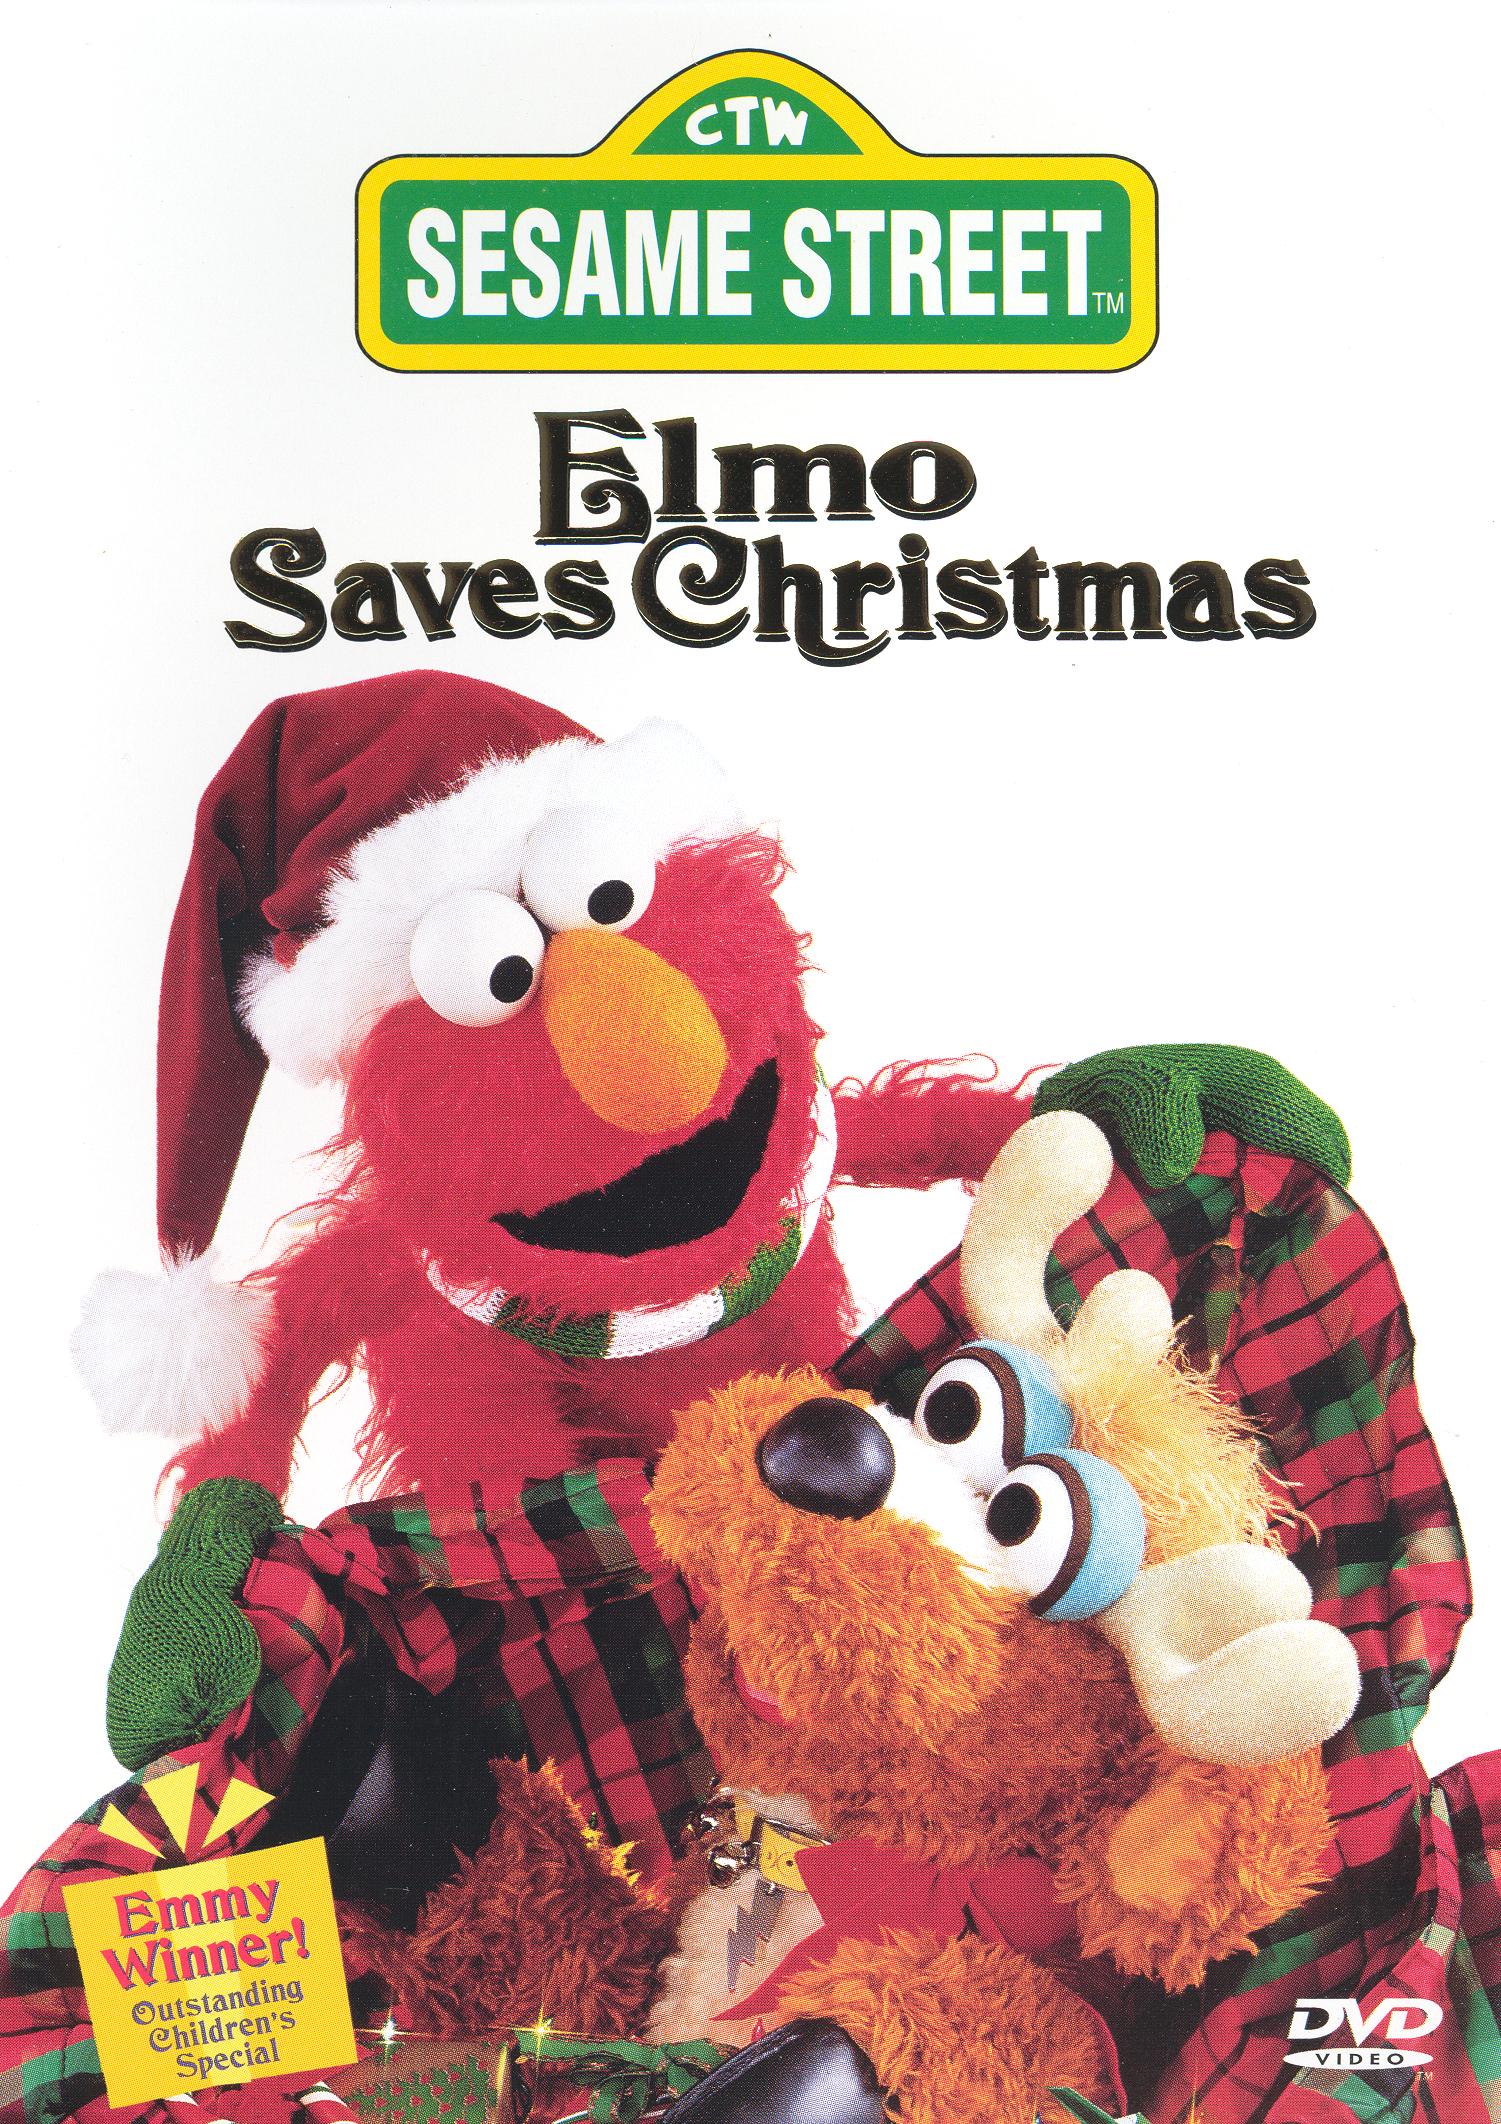 Sesame Street The Best Of Elmo 2 Dvd